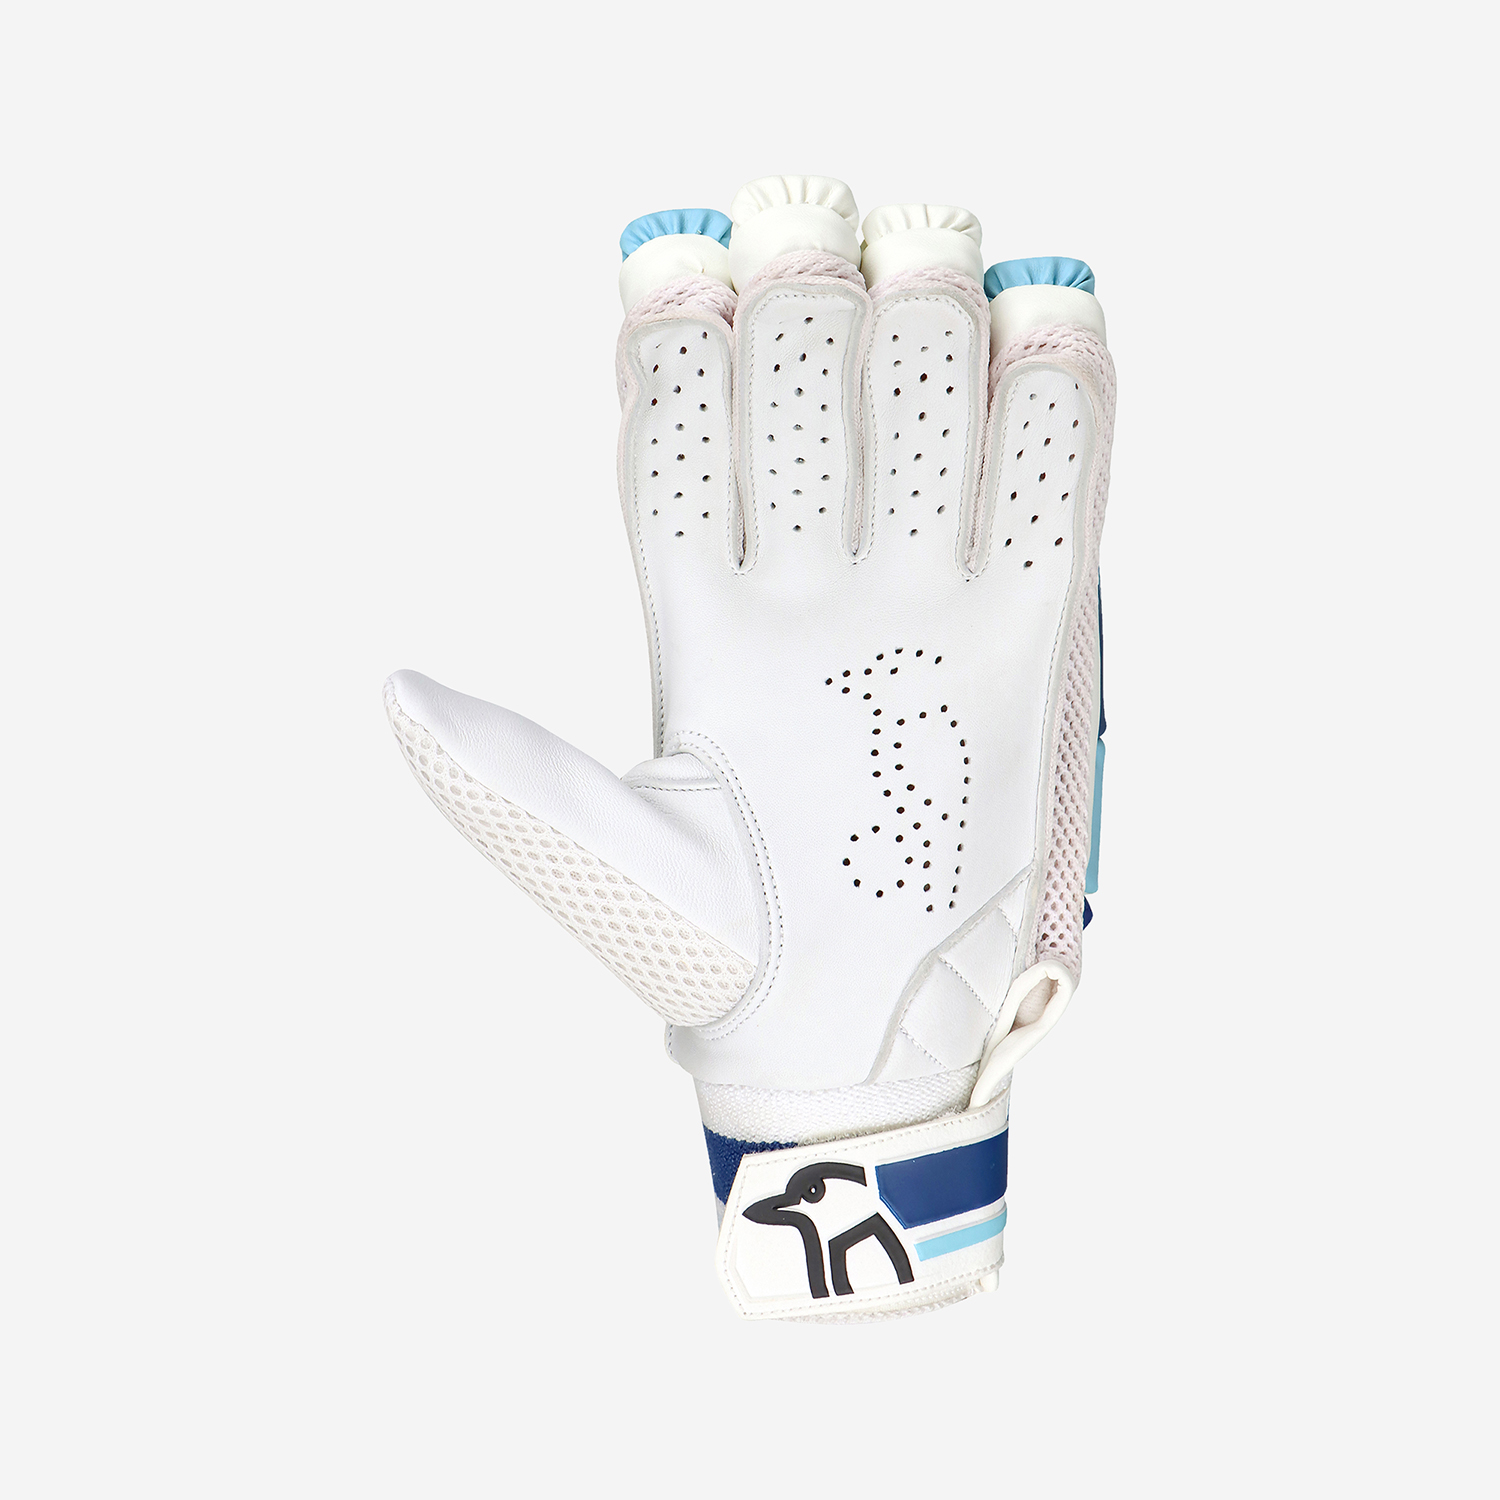 Pro 3.0 Empower Batting Gloves